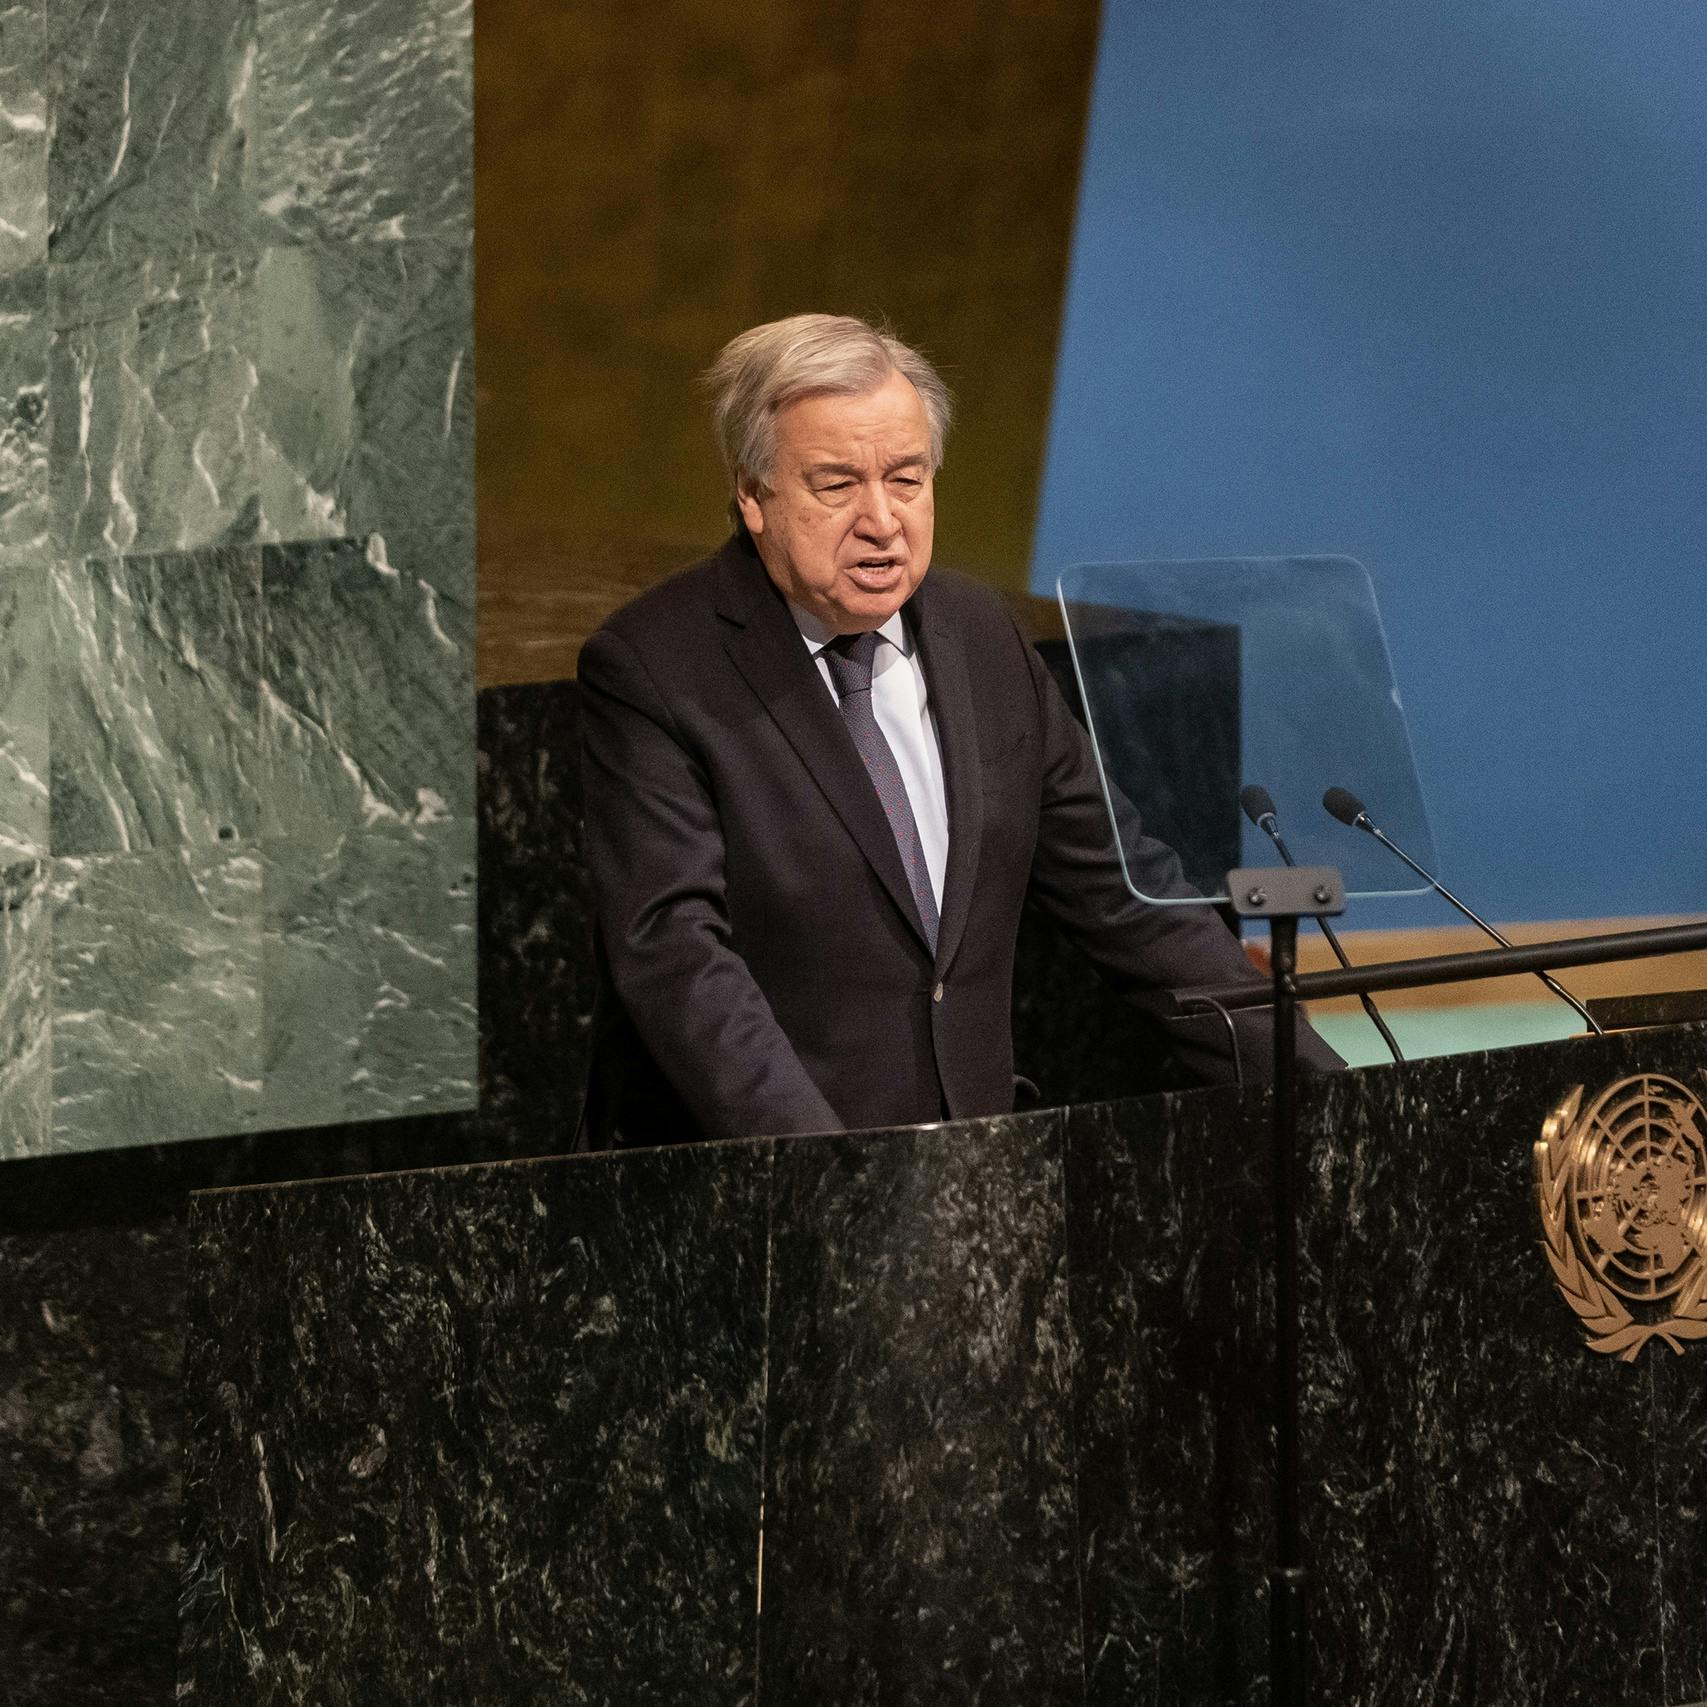 VN-topman bezorgd over geweldsspiraal Israël, VS bieden hulp aan